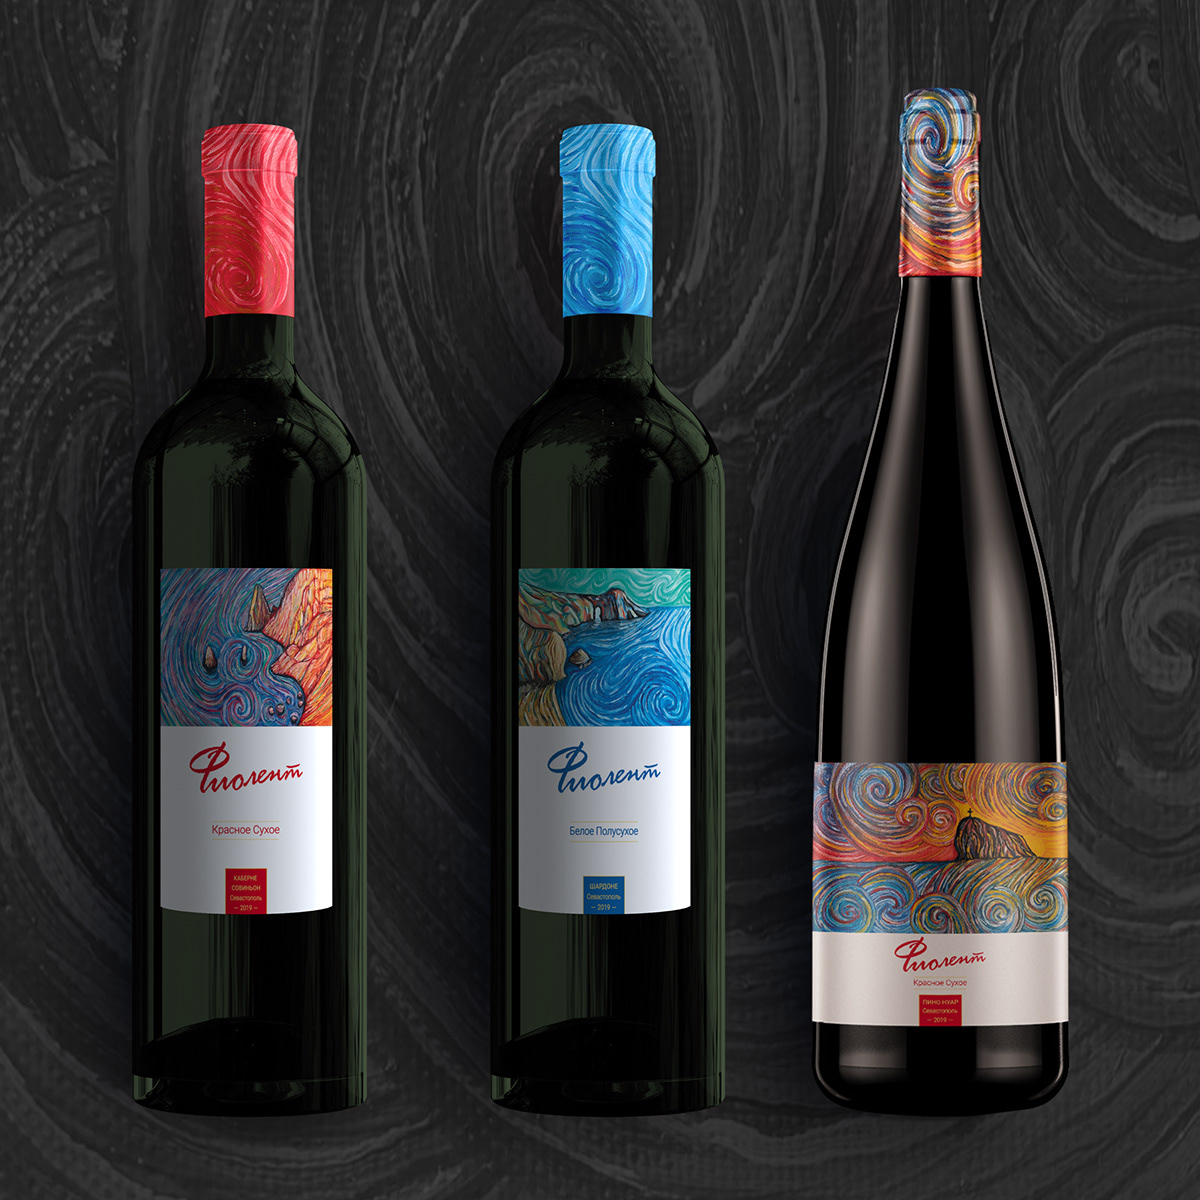 Вино Крыма дизайн бутылок дизайн вина дизайн этикеток картины масло вино Вино Фиолент крым море фиолент